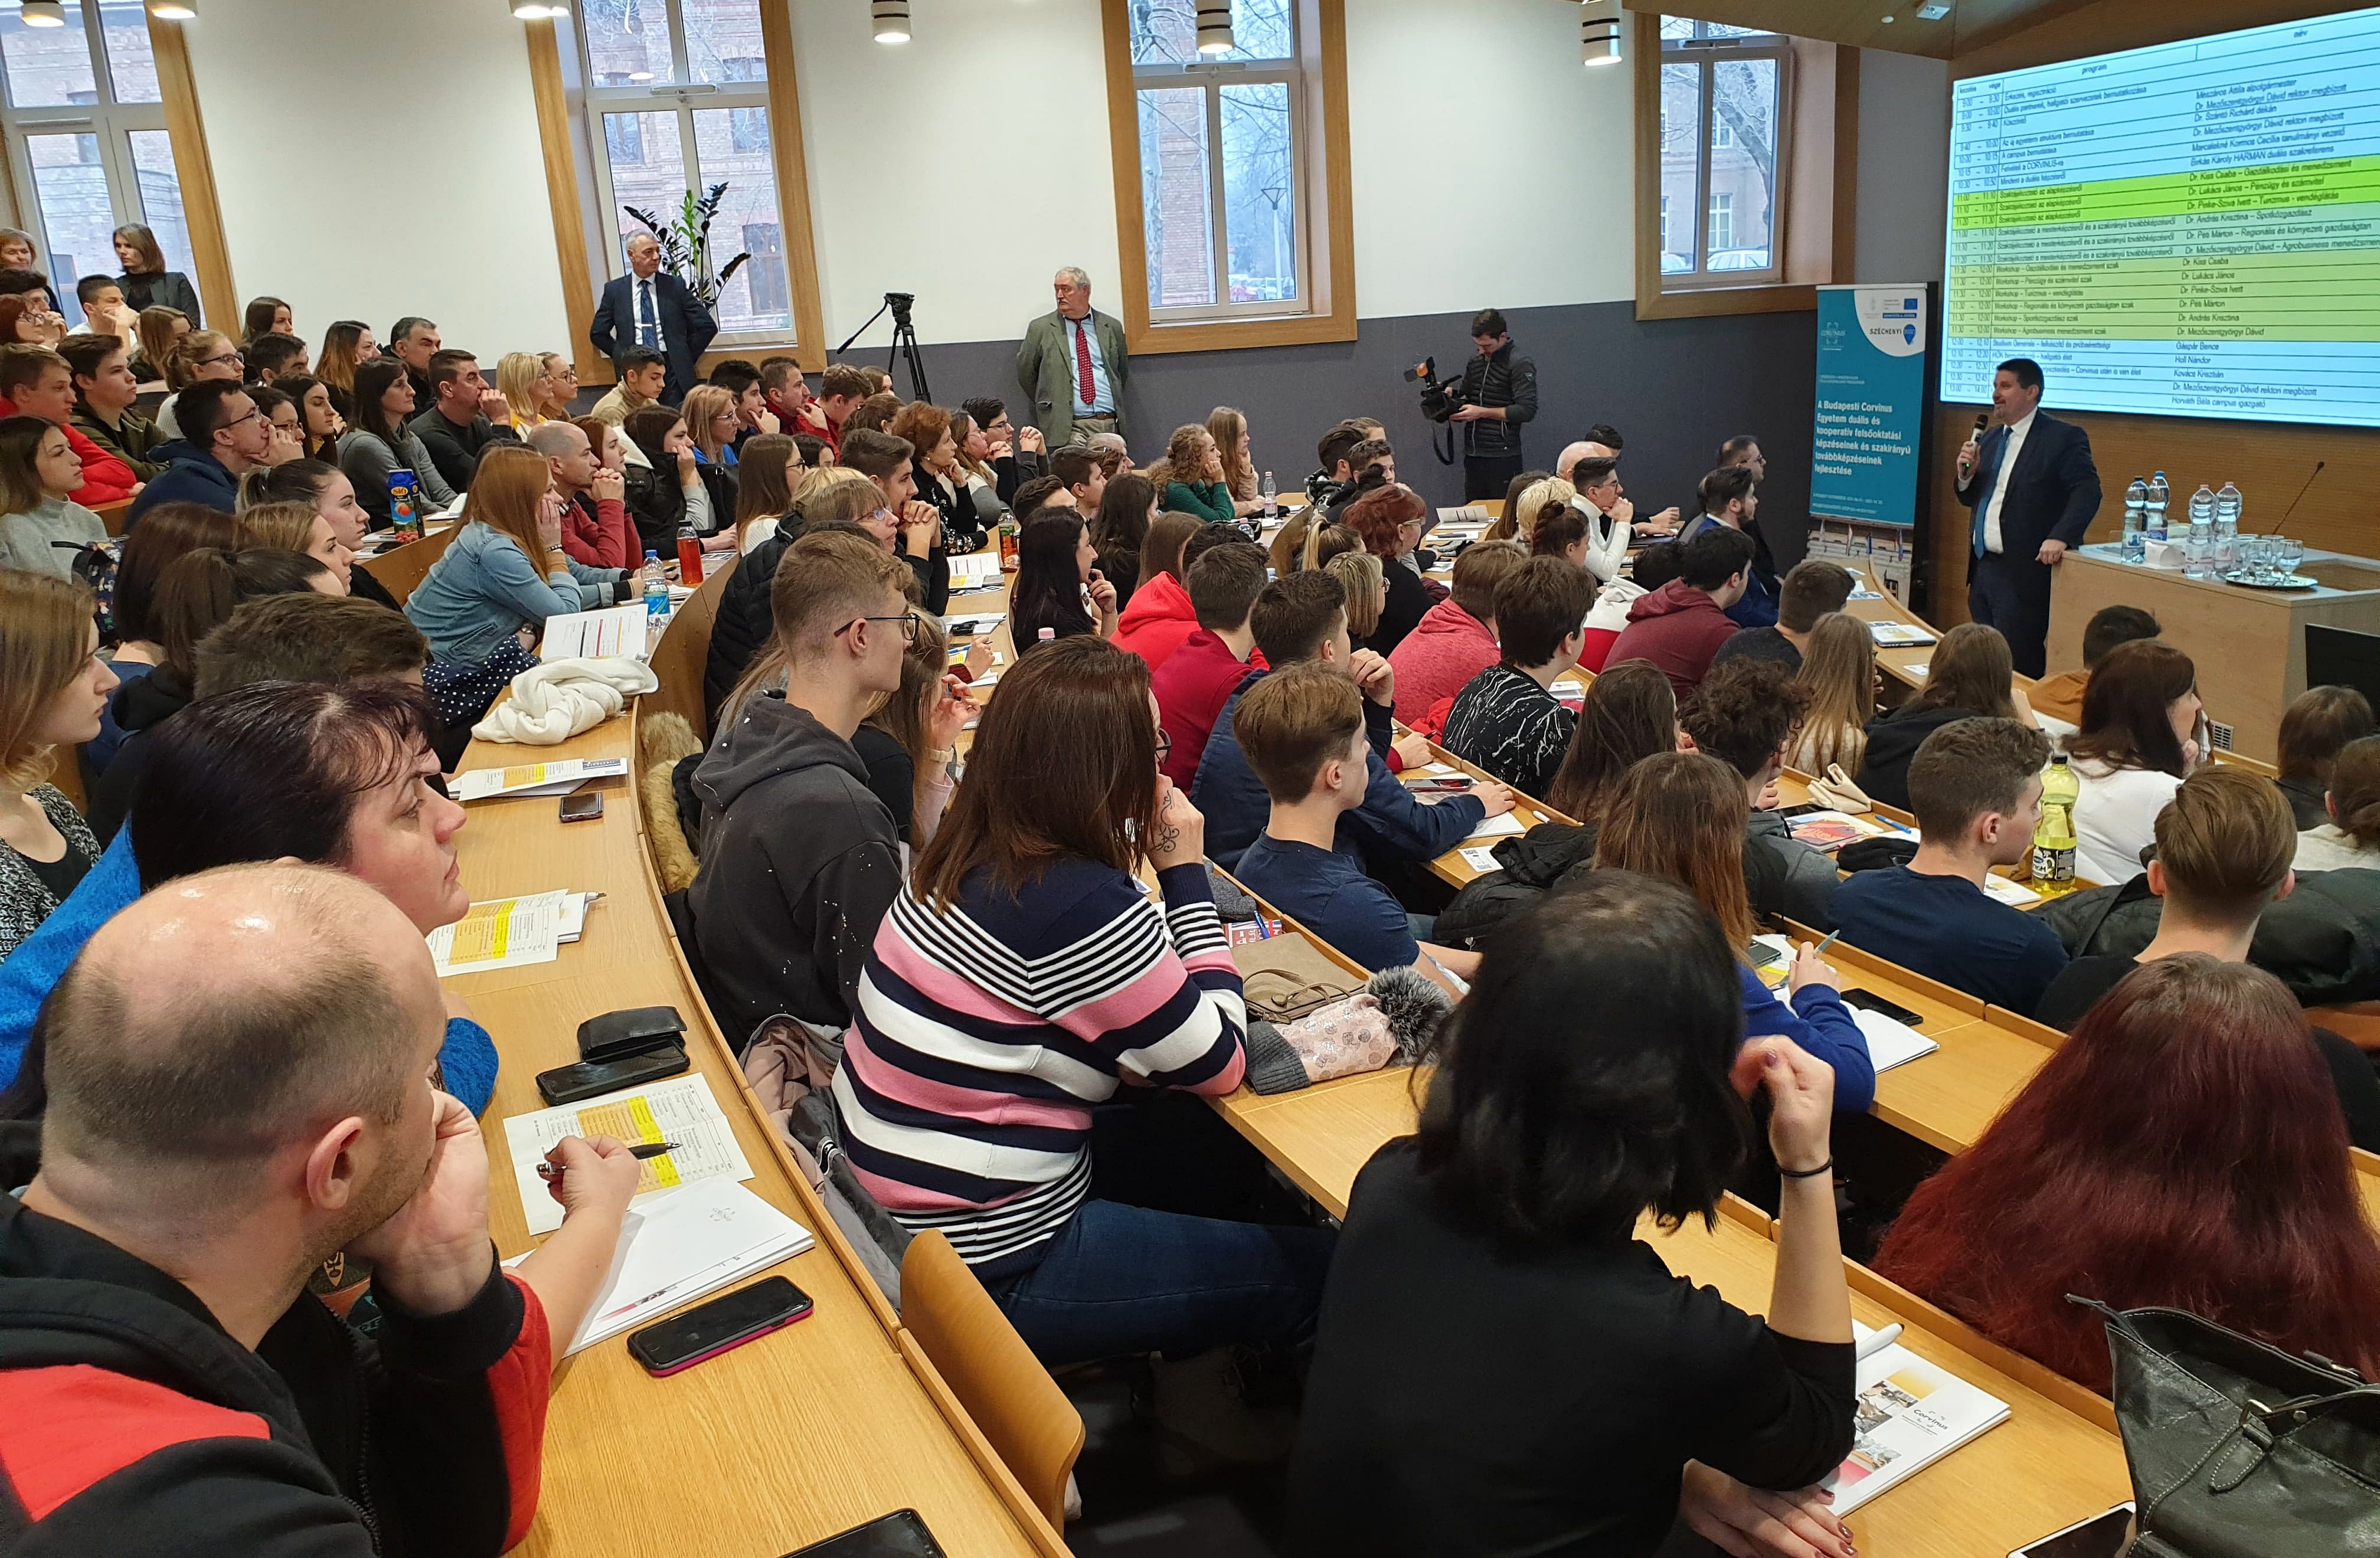 20%-al több hallgatóval folytatódnak a képzések a Corvinus Székesfehérvári Campusán